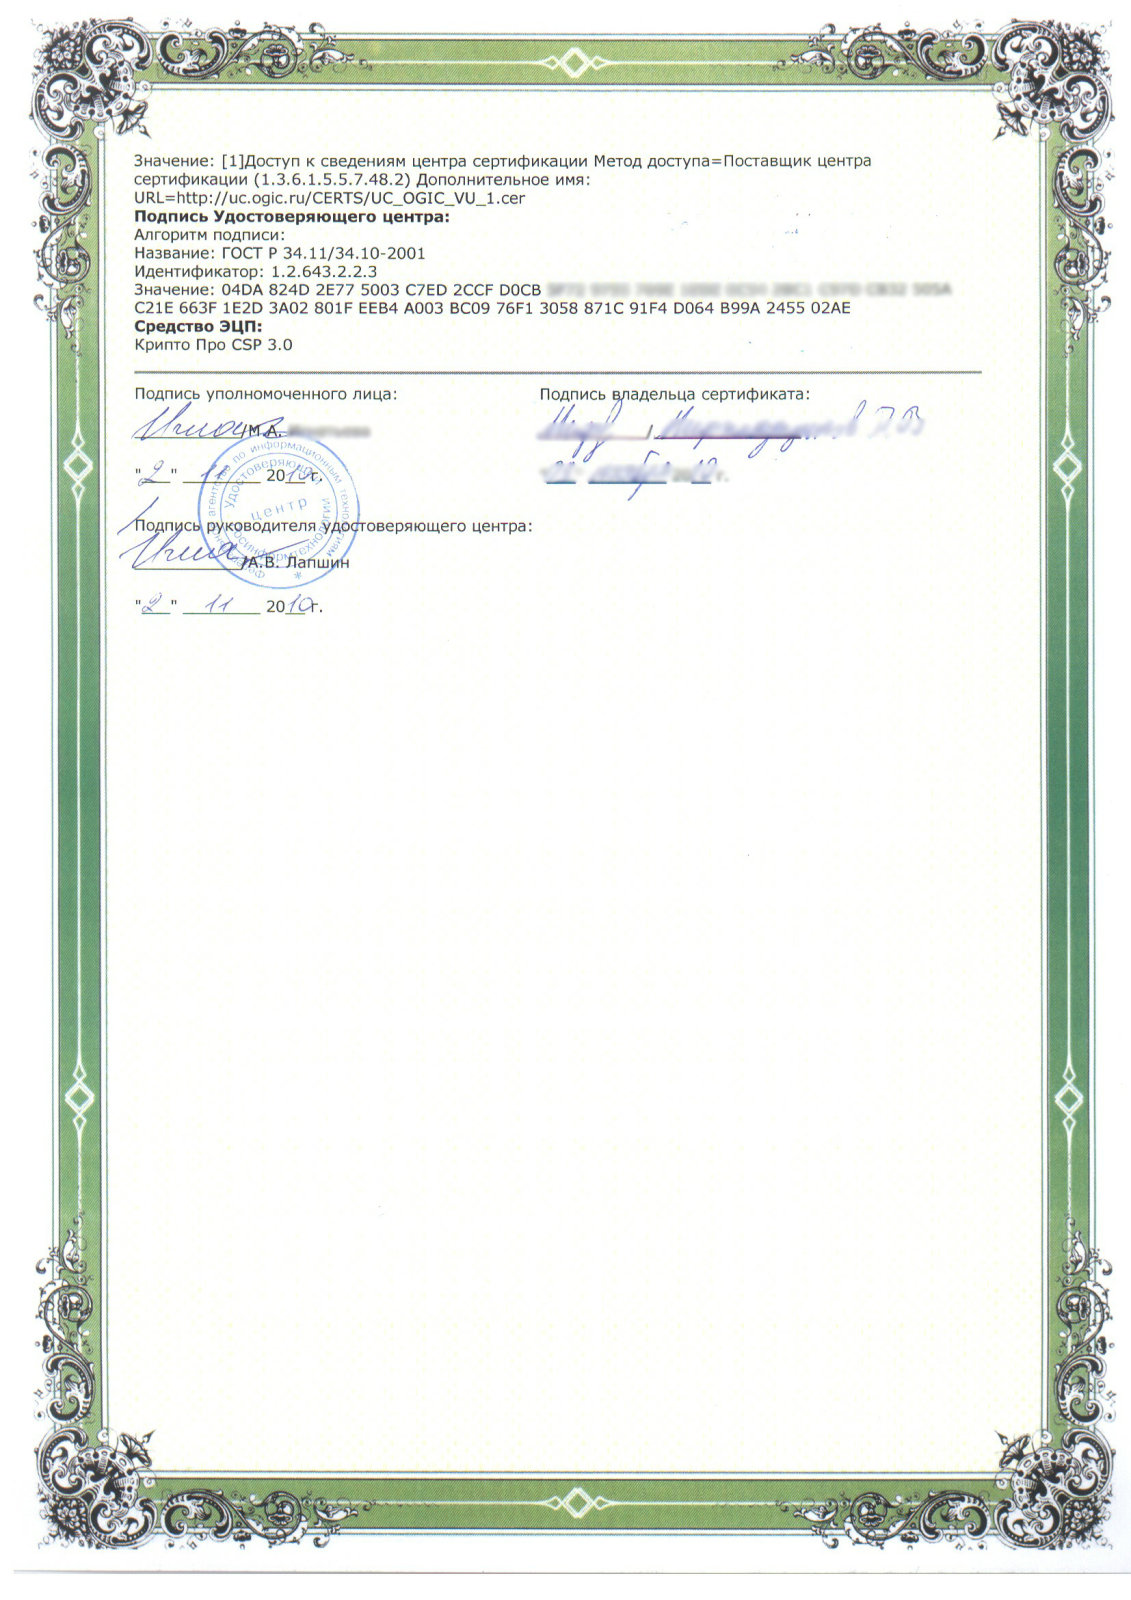 Сертификат ключа проверки электронной подписи. Сертификат цифровой подписи. Квалифицированный сертификат электронной подписи. Копии сертификатов квалифицированной электронной подписи. Пример сертификата ЭЦП.